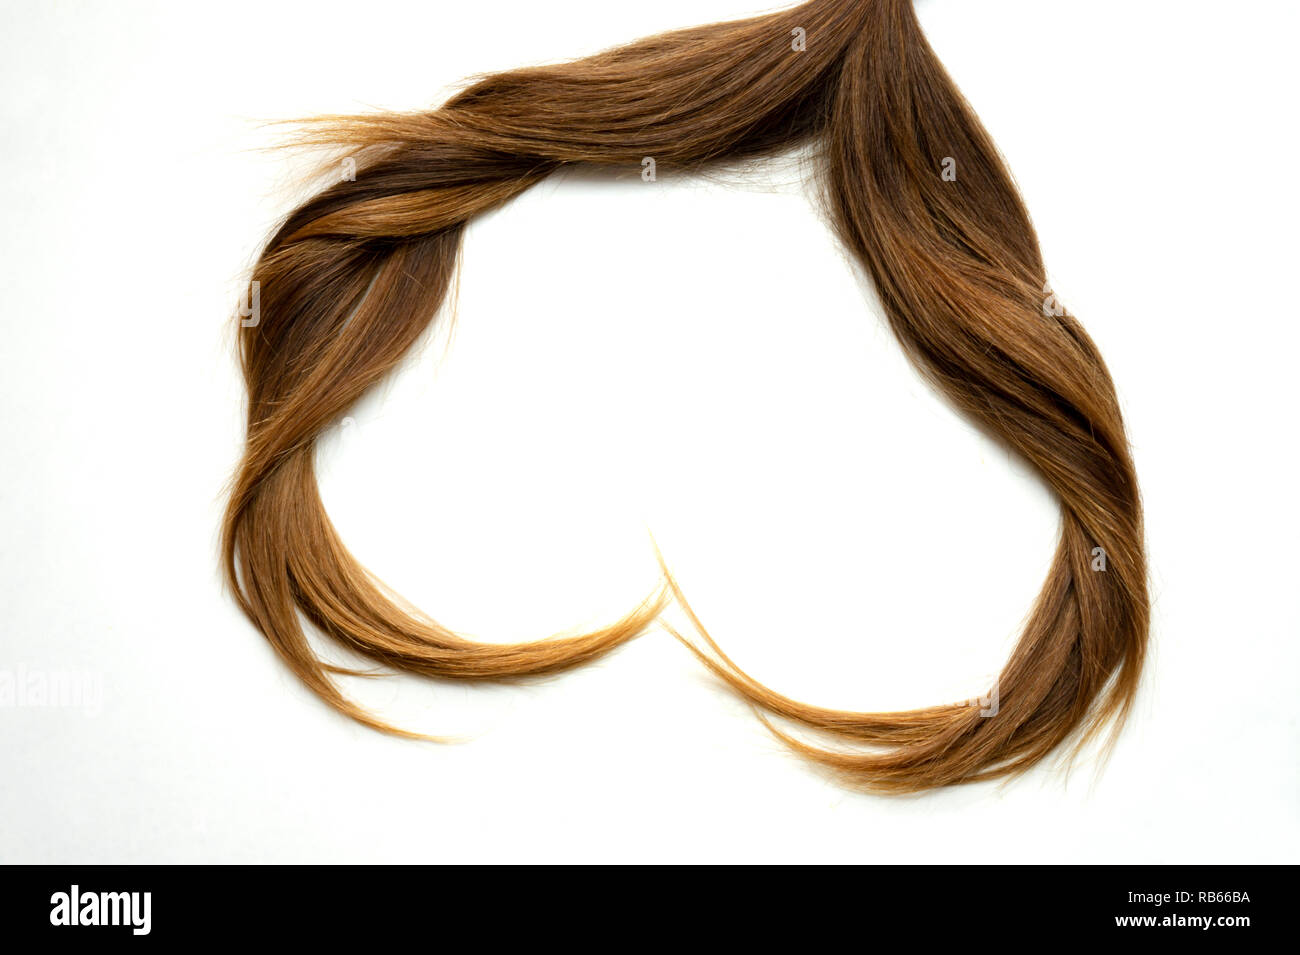 Coeur en cheveux naturels sur fond blanc Santé des cheveux cheveux en forme de coeur - concept Banque D'Images